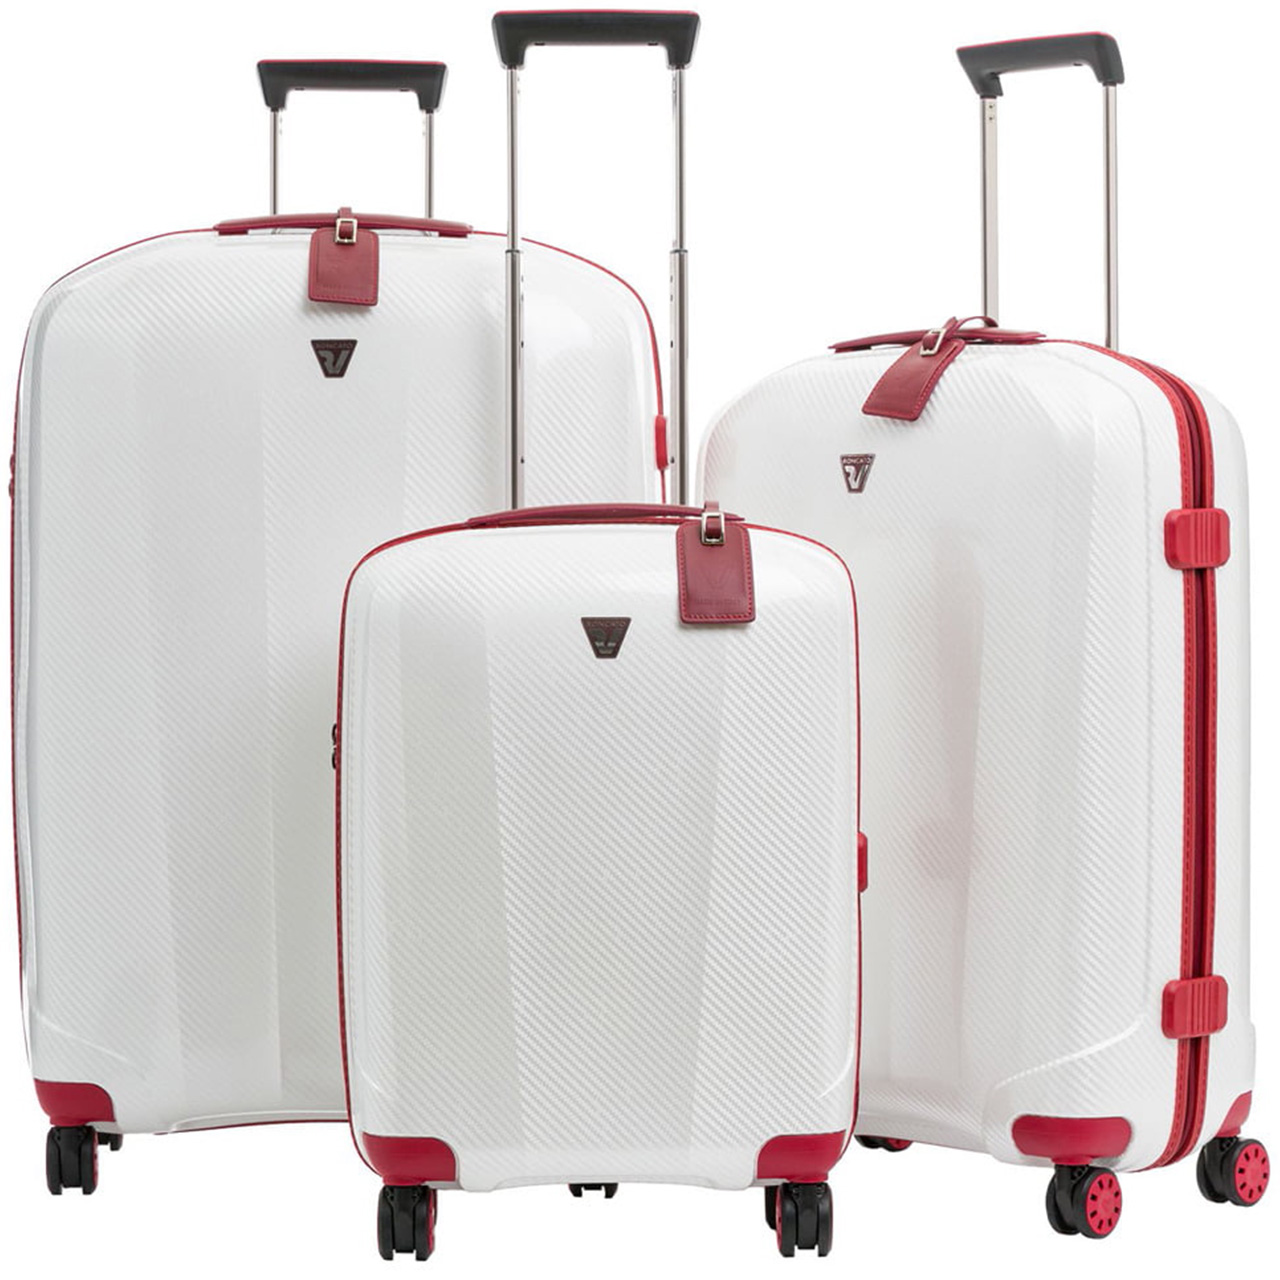 نکته خرید - قیمت روز مجموعه سه عددی چمدان رونکاتو مدل 5950 خرید